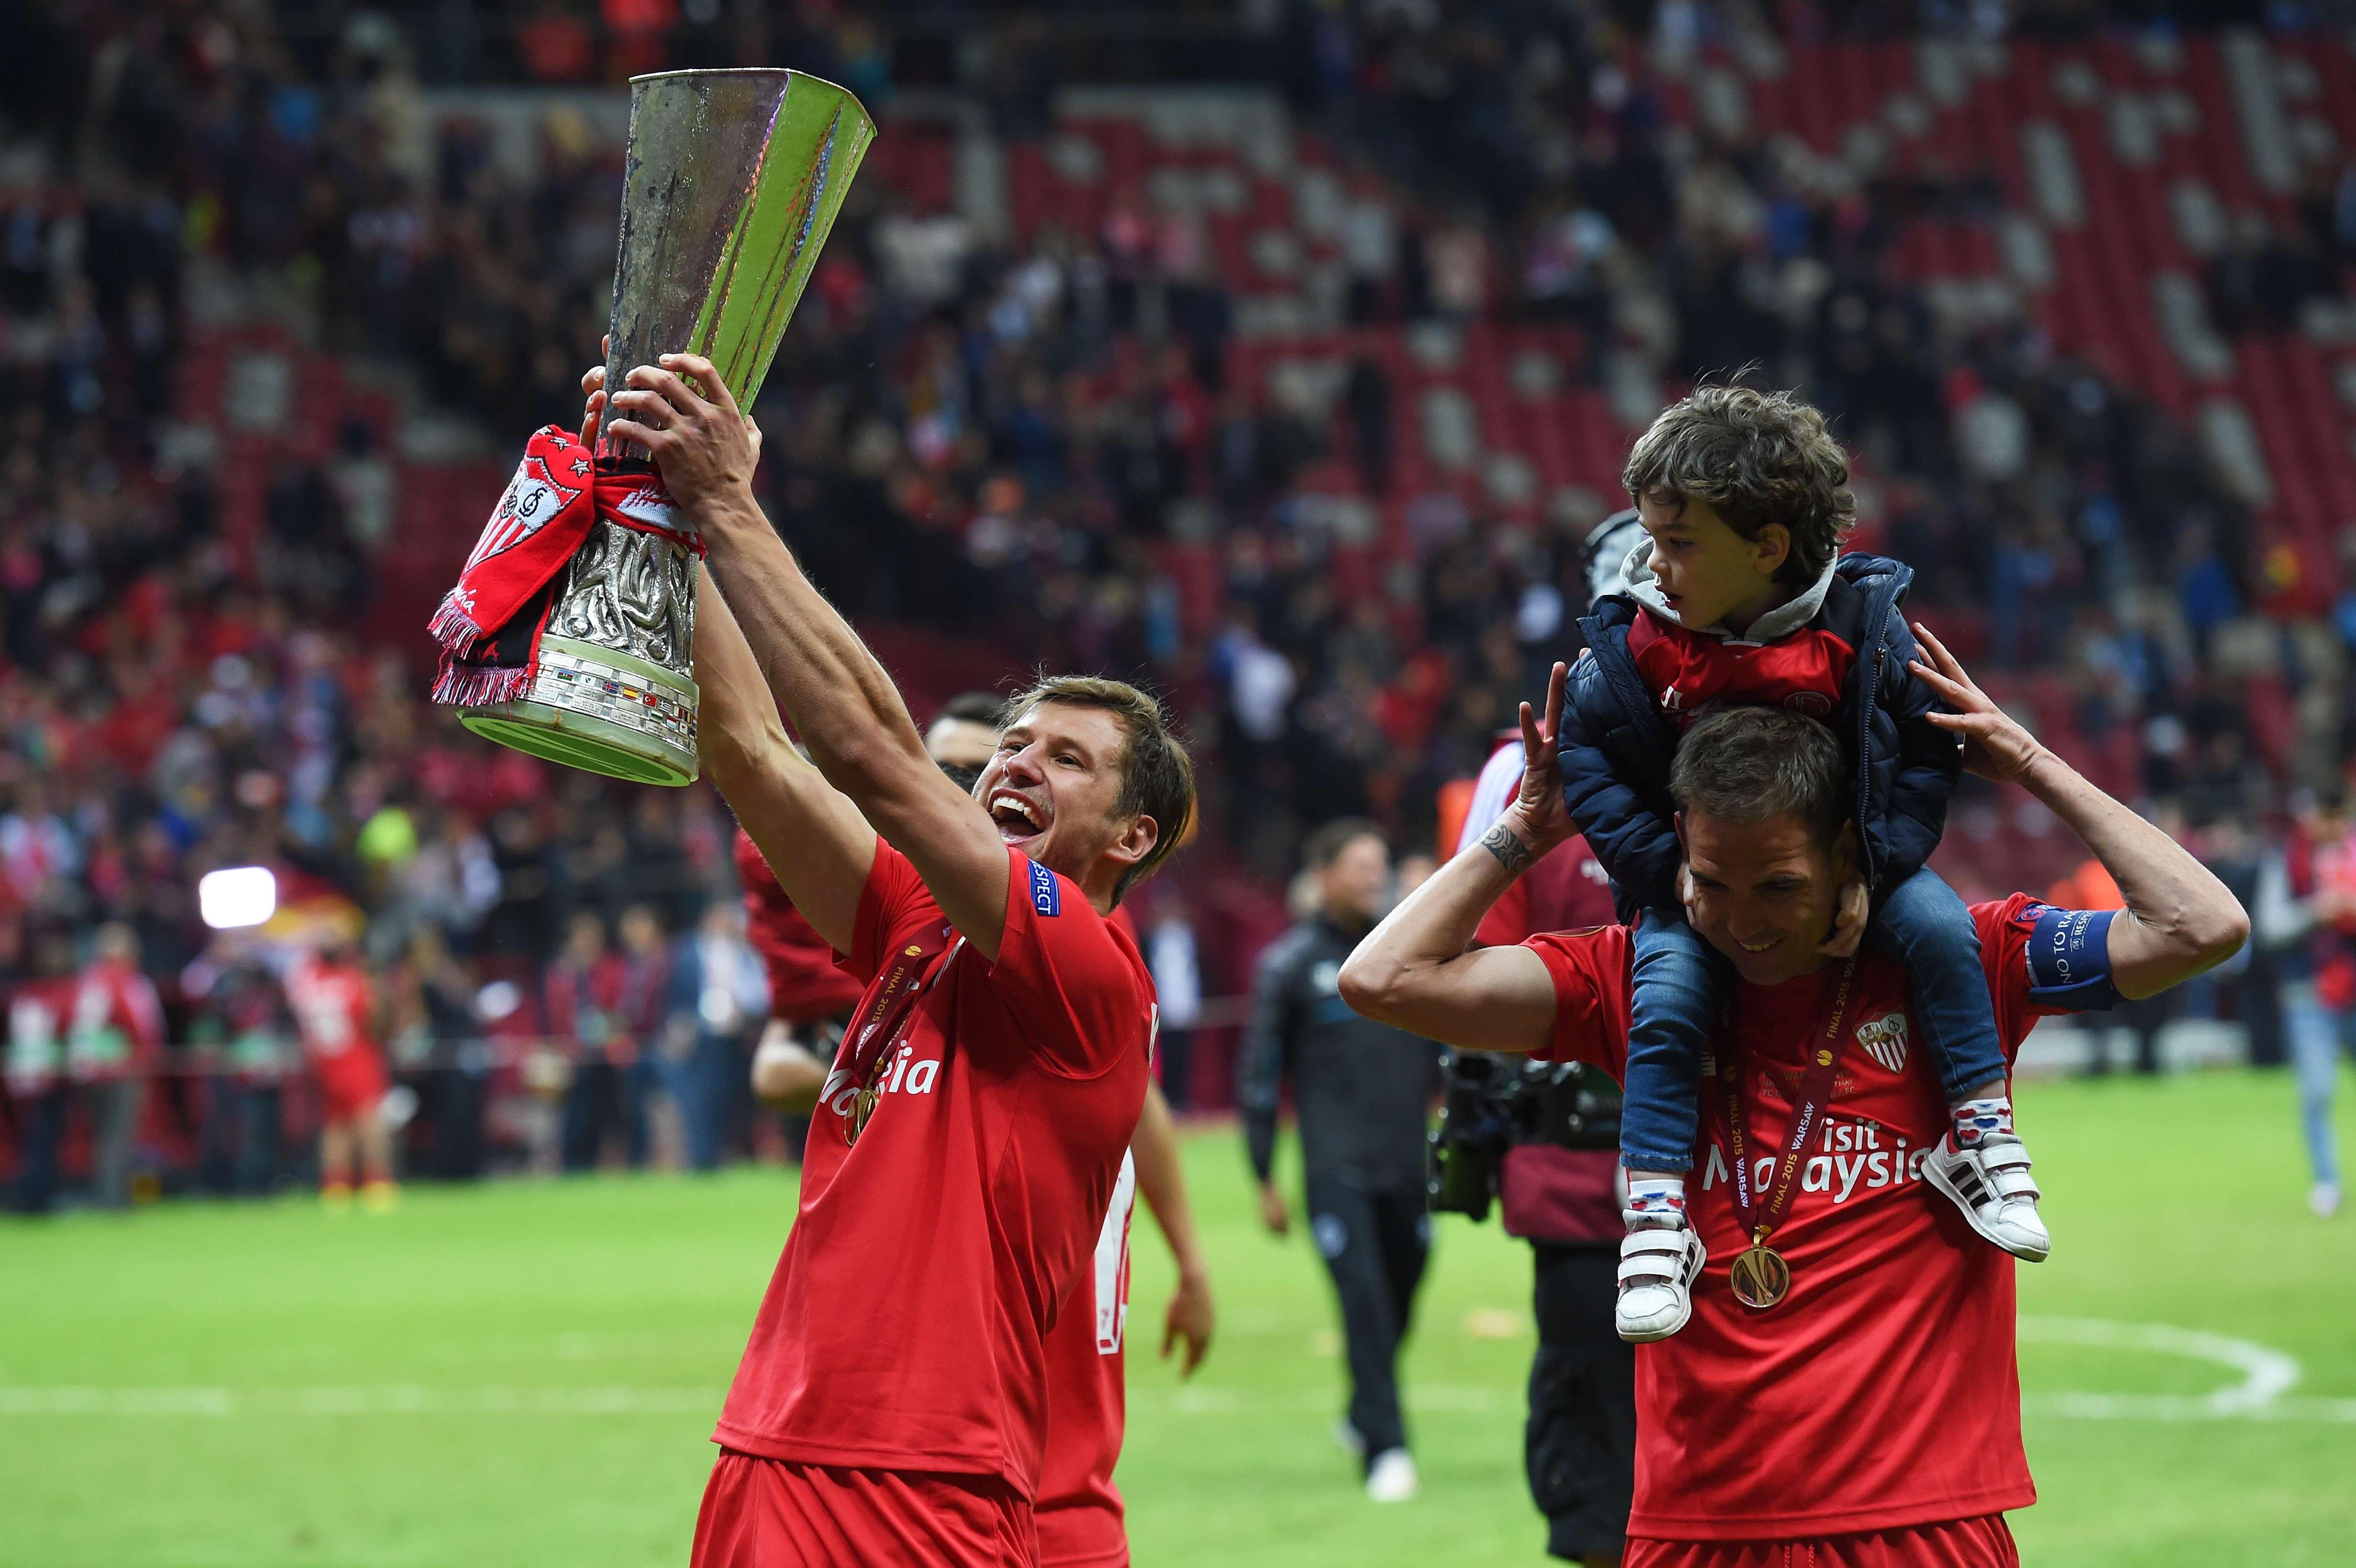 Sevilla FC's Grzegorz Krychowiak lifts the Europa League trophy